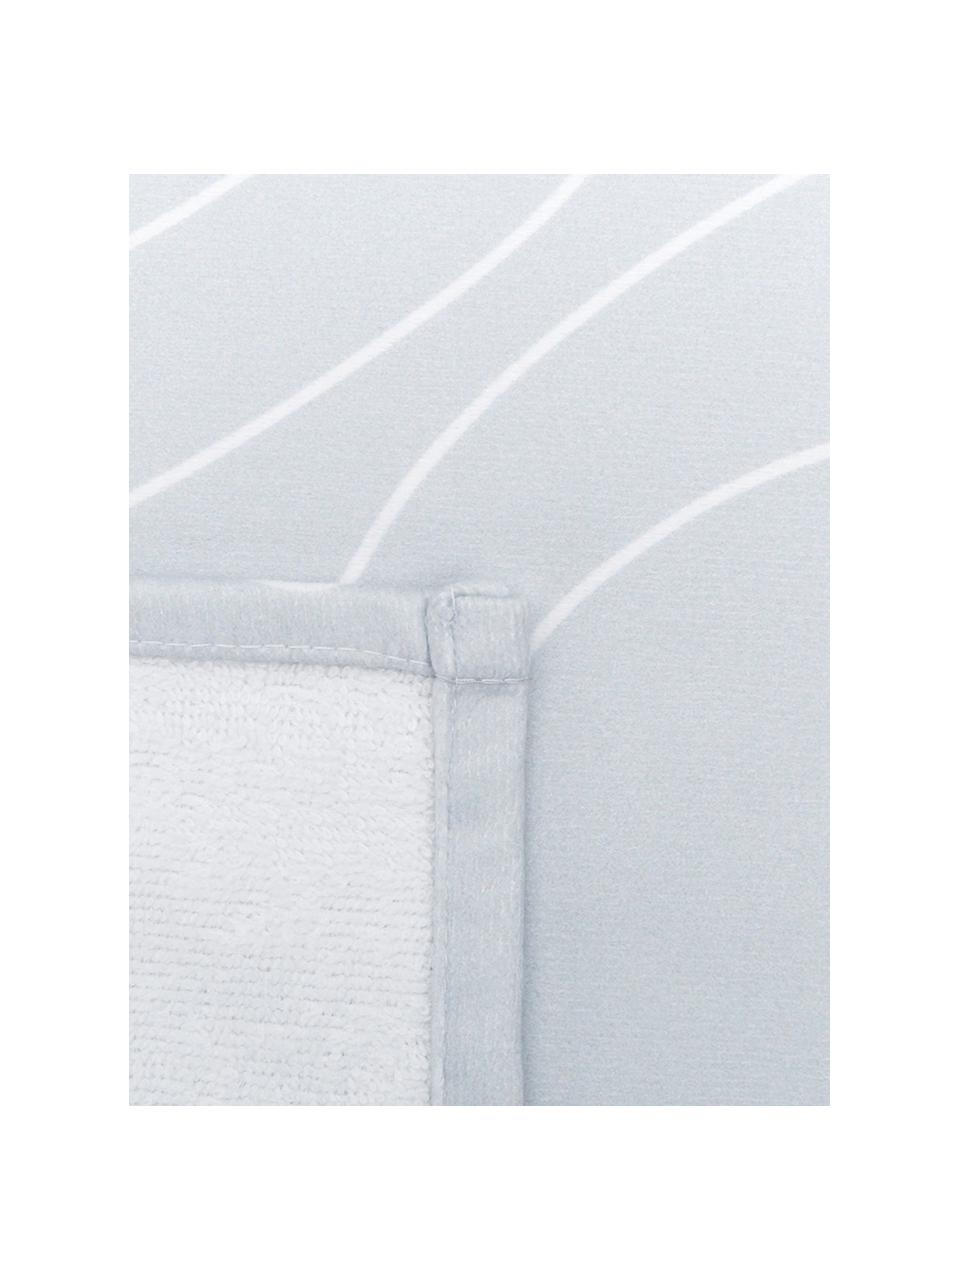 Leichtes Strandtuch Faces mit abstrakter One Line Zeichnung, 55% Polyester, 45% Baumwolle Sehr leichte Qualität, 340 g/m², Grau, Weiß, B 70 x L 150 cm